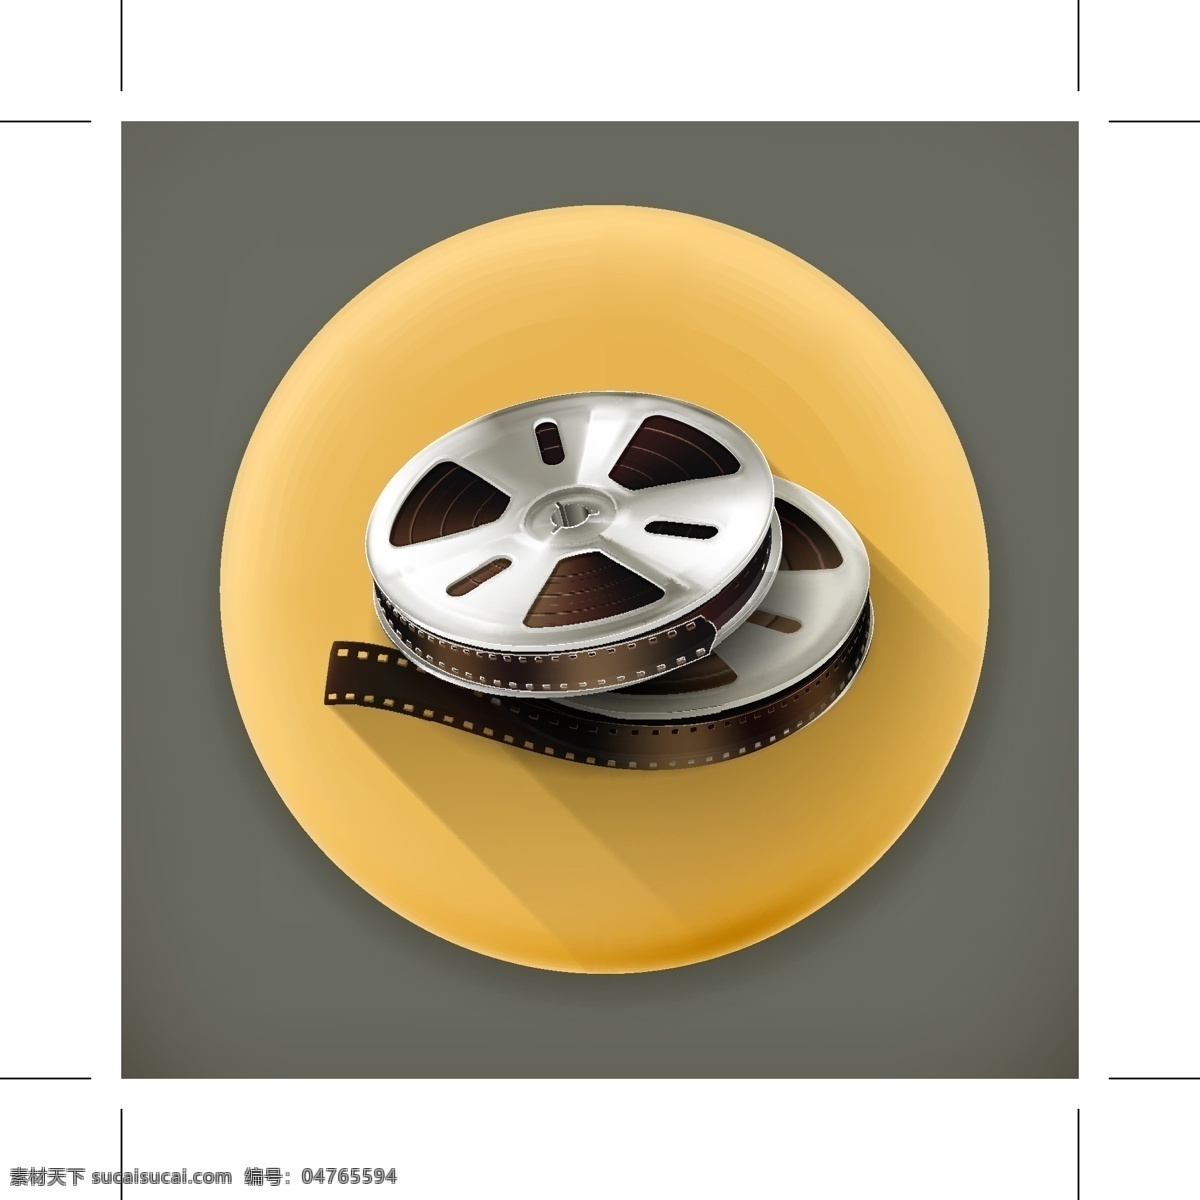 电影放映机图 电影放映机 图 模板下载 电影 看电影 电影工具 放电影 磁带 影音娱乐 生活百科 矢量素材 白色